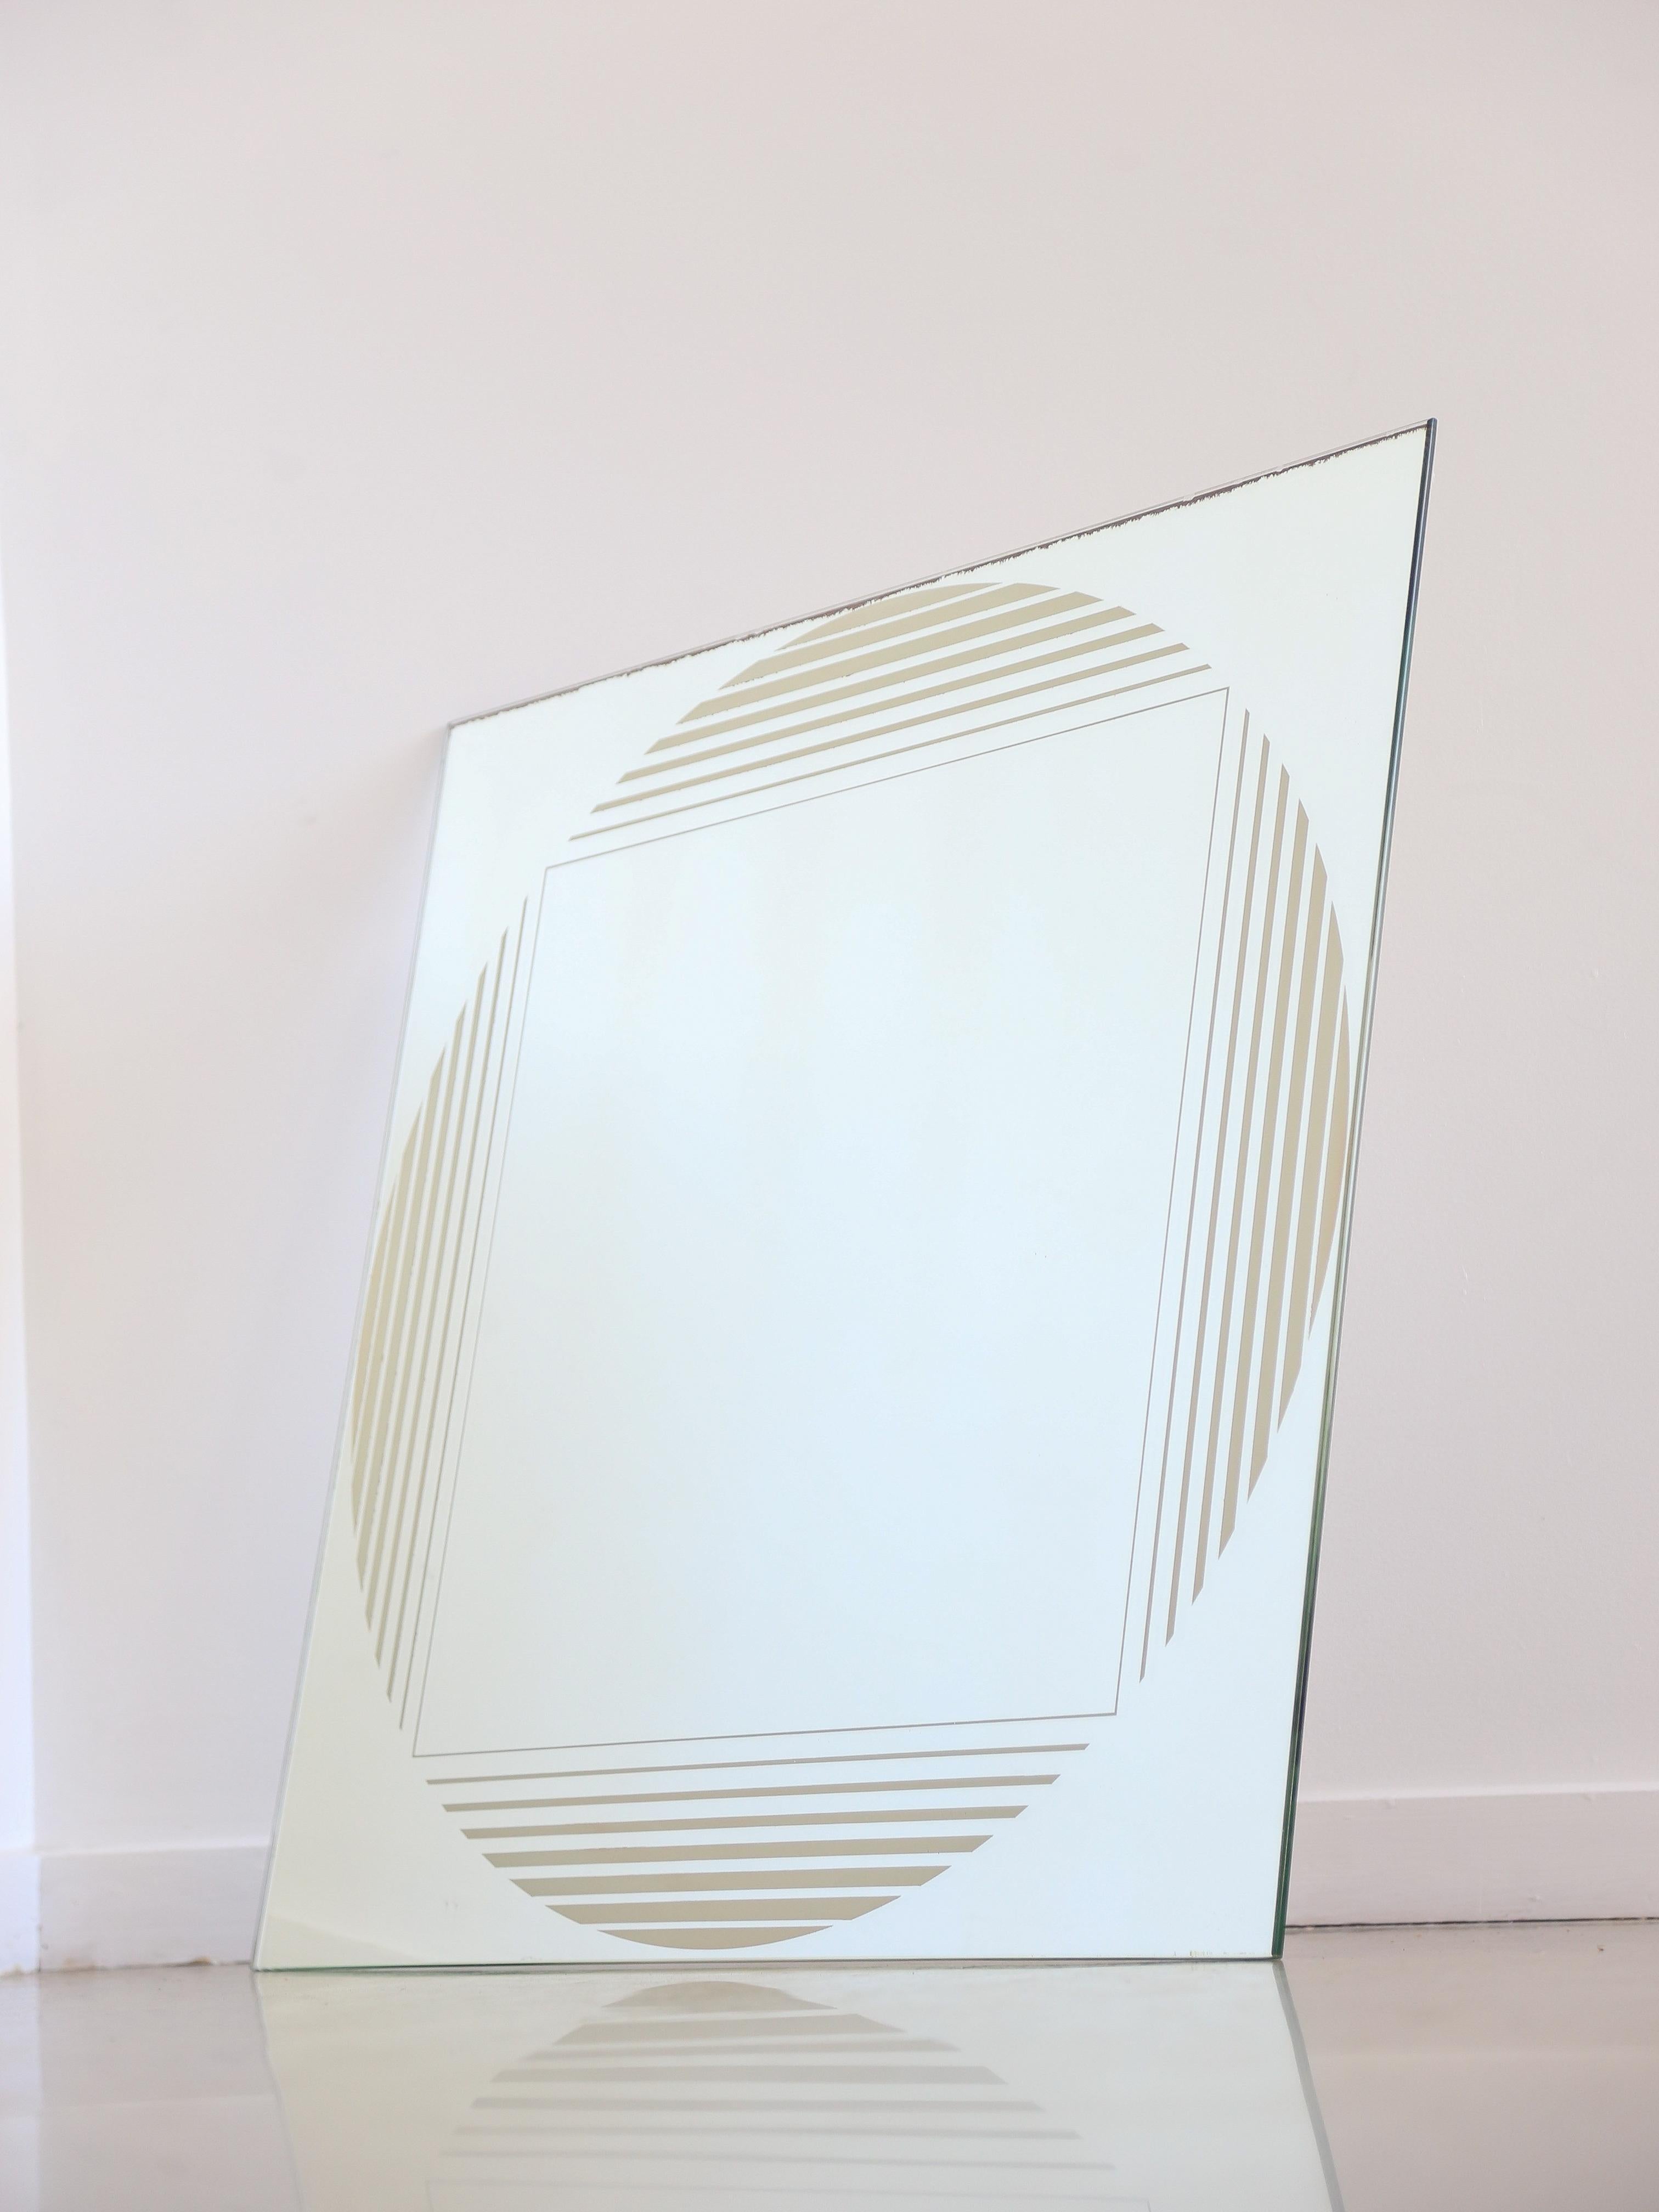 Miroir mural Gianni Celada pour Fontana Arte. 
Miroir mural de Gianni Celada pour Fontana Arte, conçu dans les années 70. Le miroir est décoré d'une sérigraphie, thème géométrique argenté.
Publié dans : L. Falconi, 